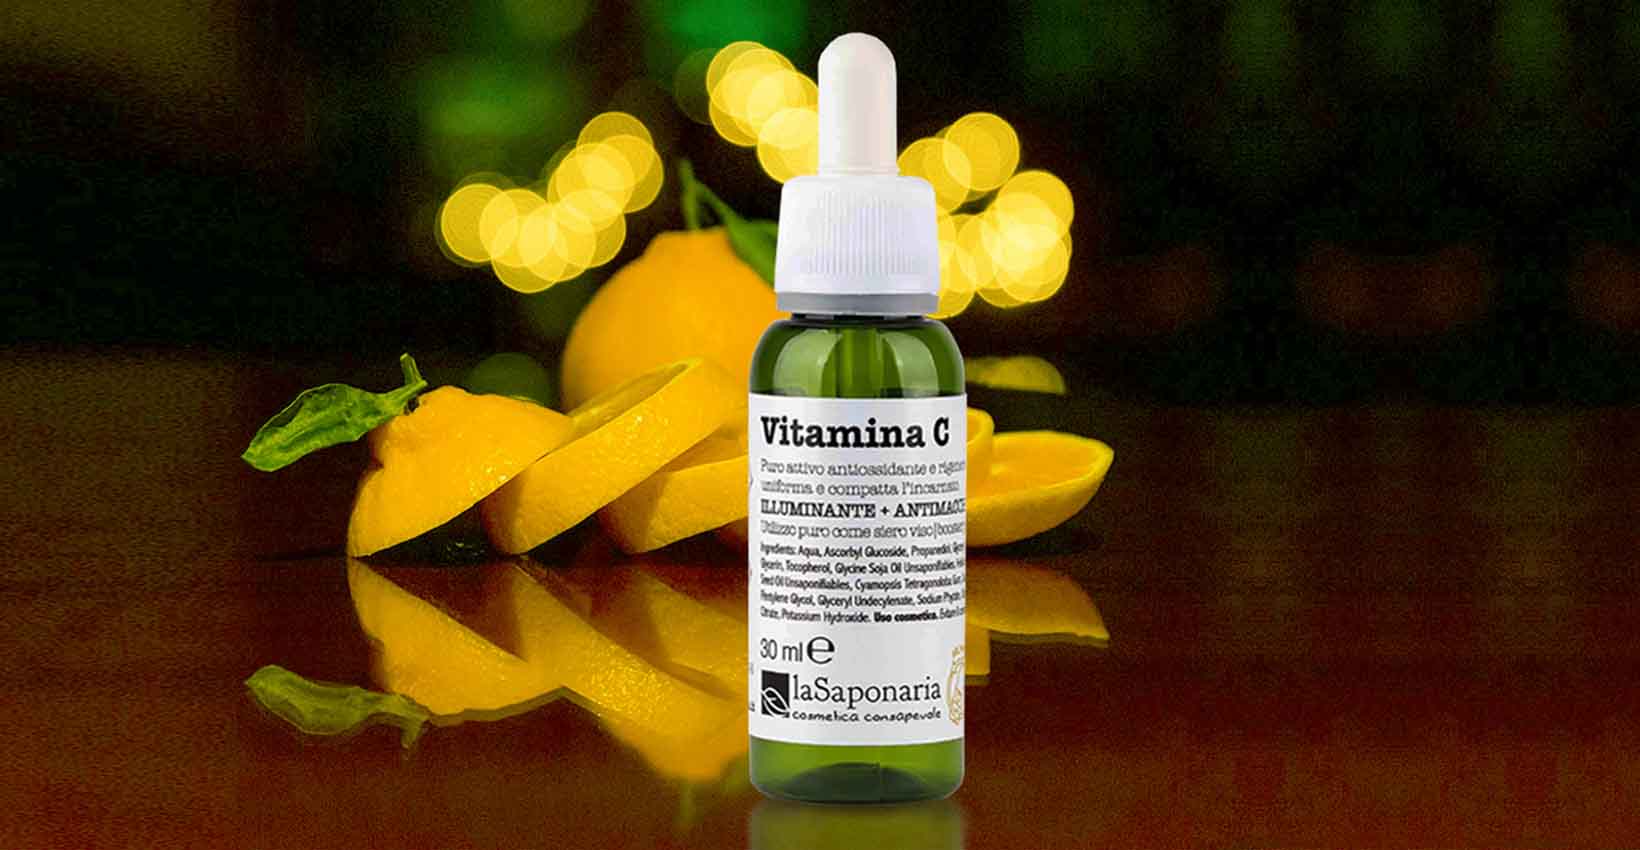 Vitamina C, nje serum i jashtezakonshem per fytyren, kundra rrudhave, njollave dhe moshes